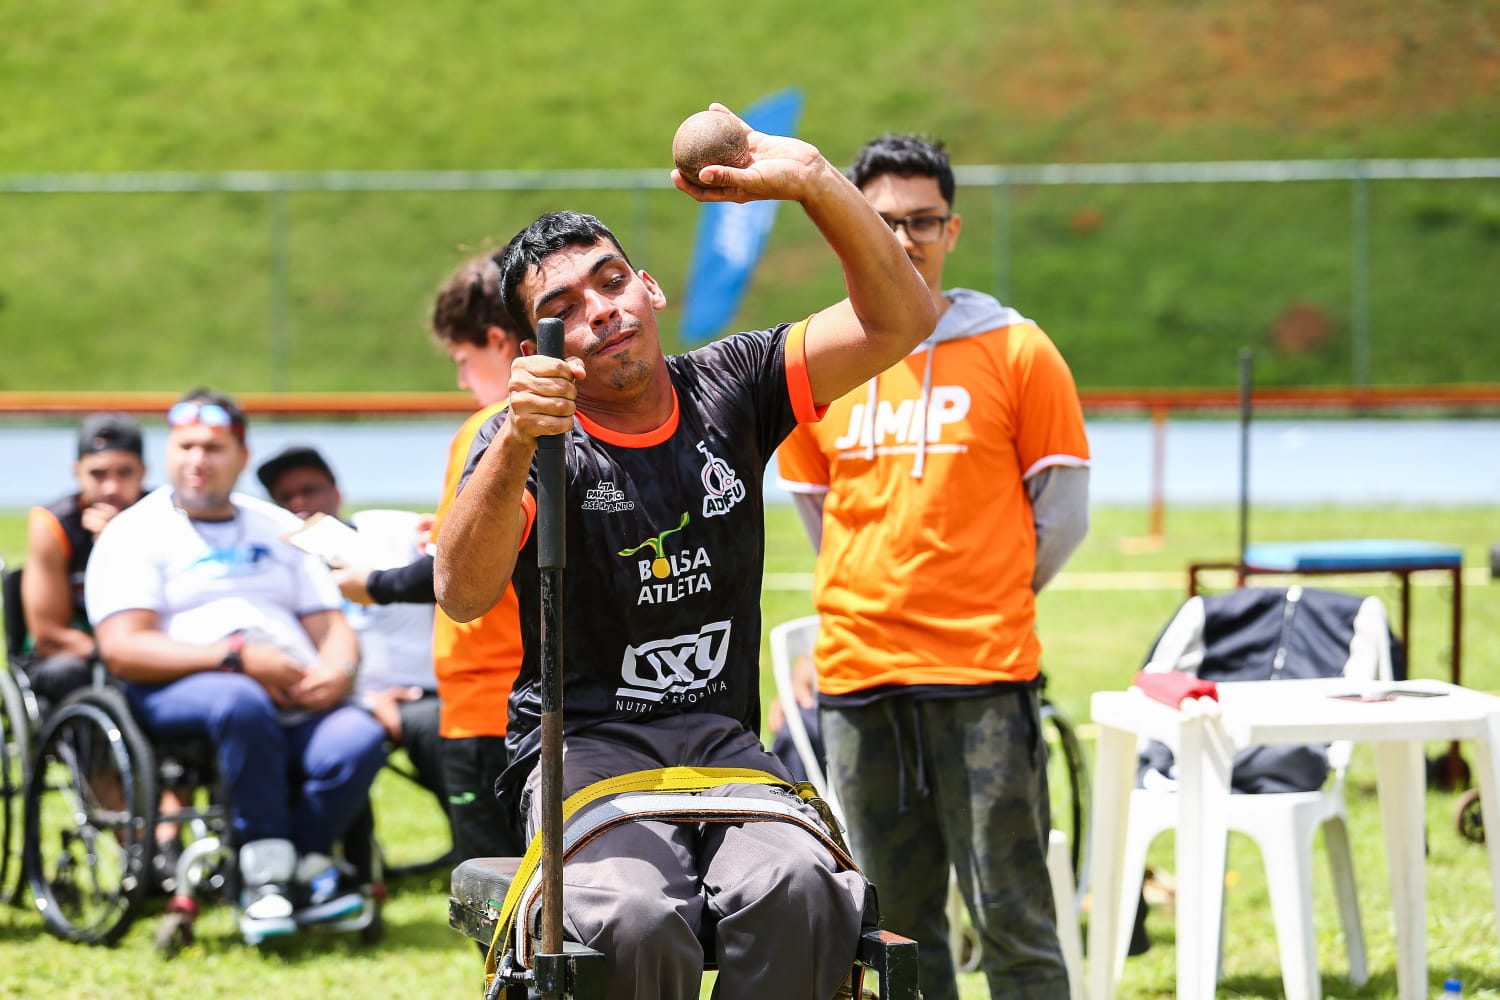 Governo lança programa esportivo voltado para pessoas com deficiência  intelectual - Portal do Estado do Rio Grande do Sul